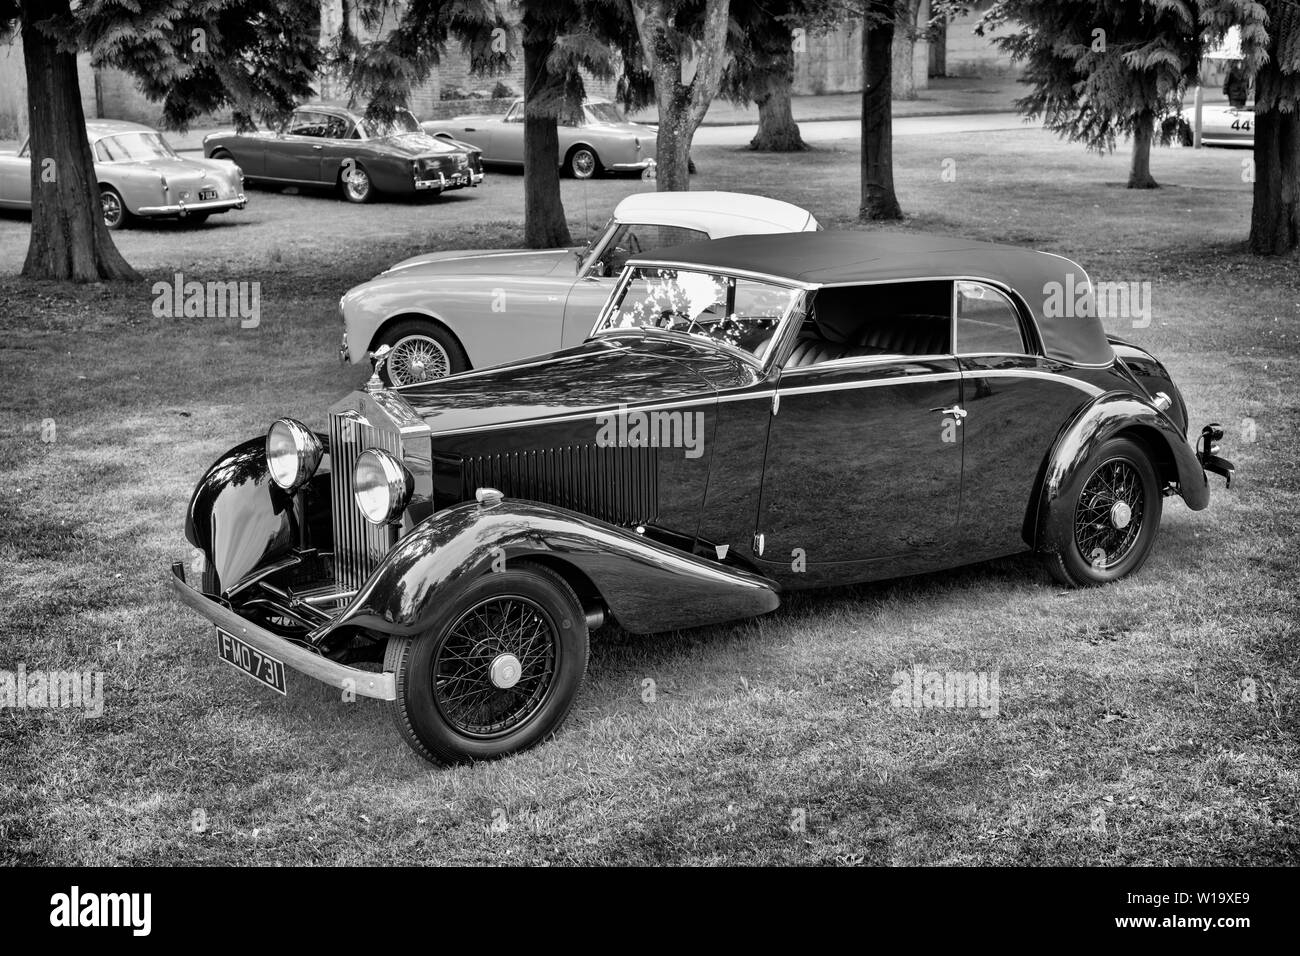 1932 Rolls Royce 20/25 location à Bicester Heritage Centre super scramble event. Bicester, Oxfordshire, Angleterre. Le noir et blanc Banque D'Images